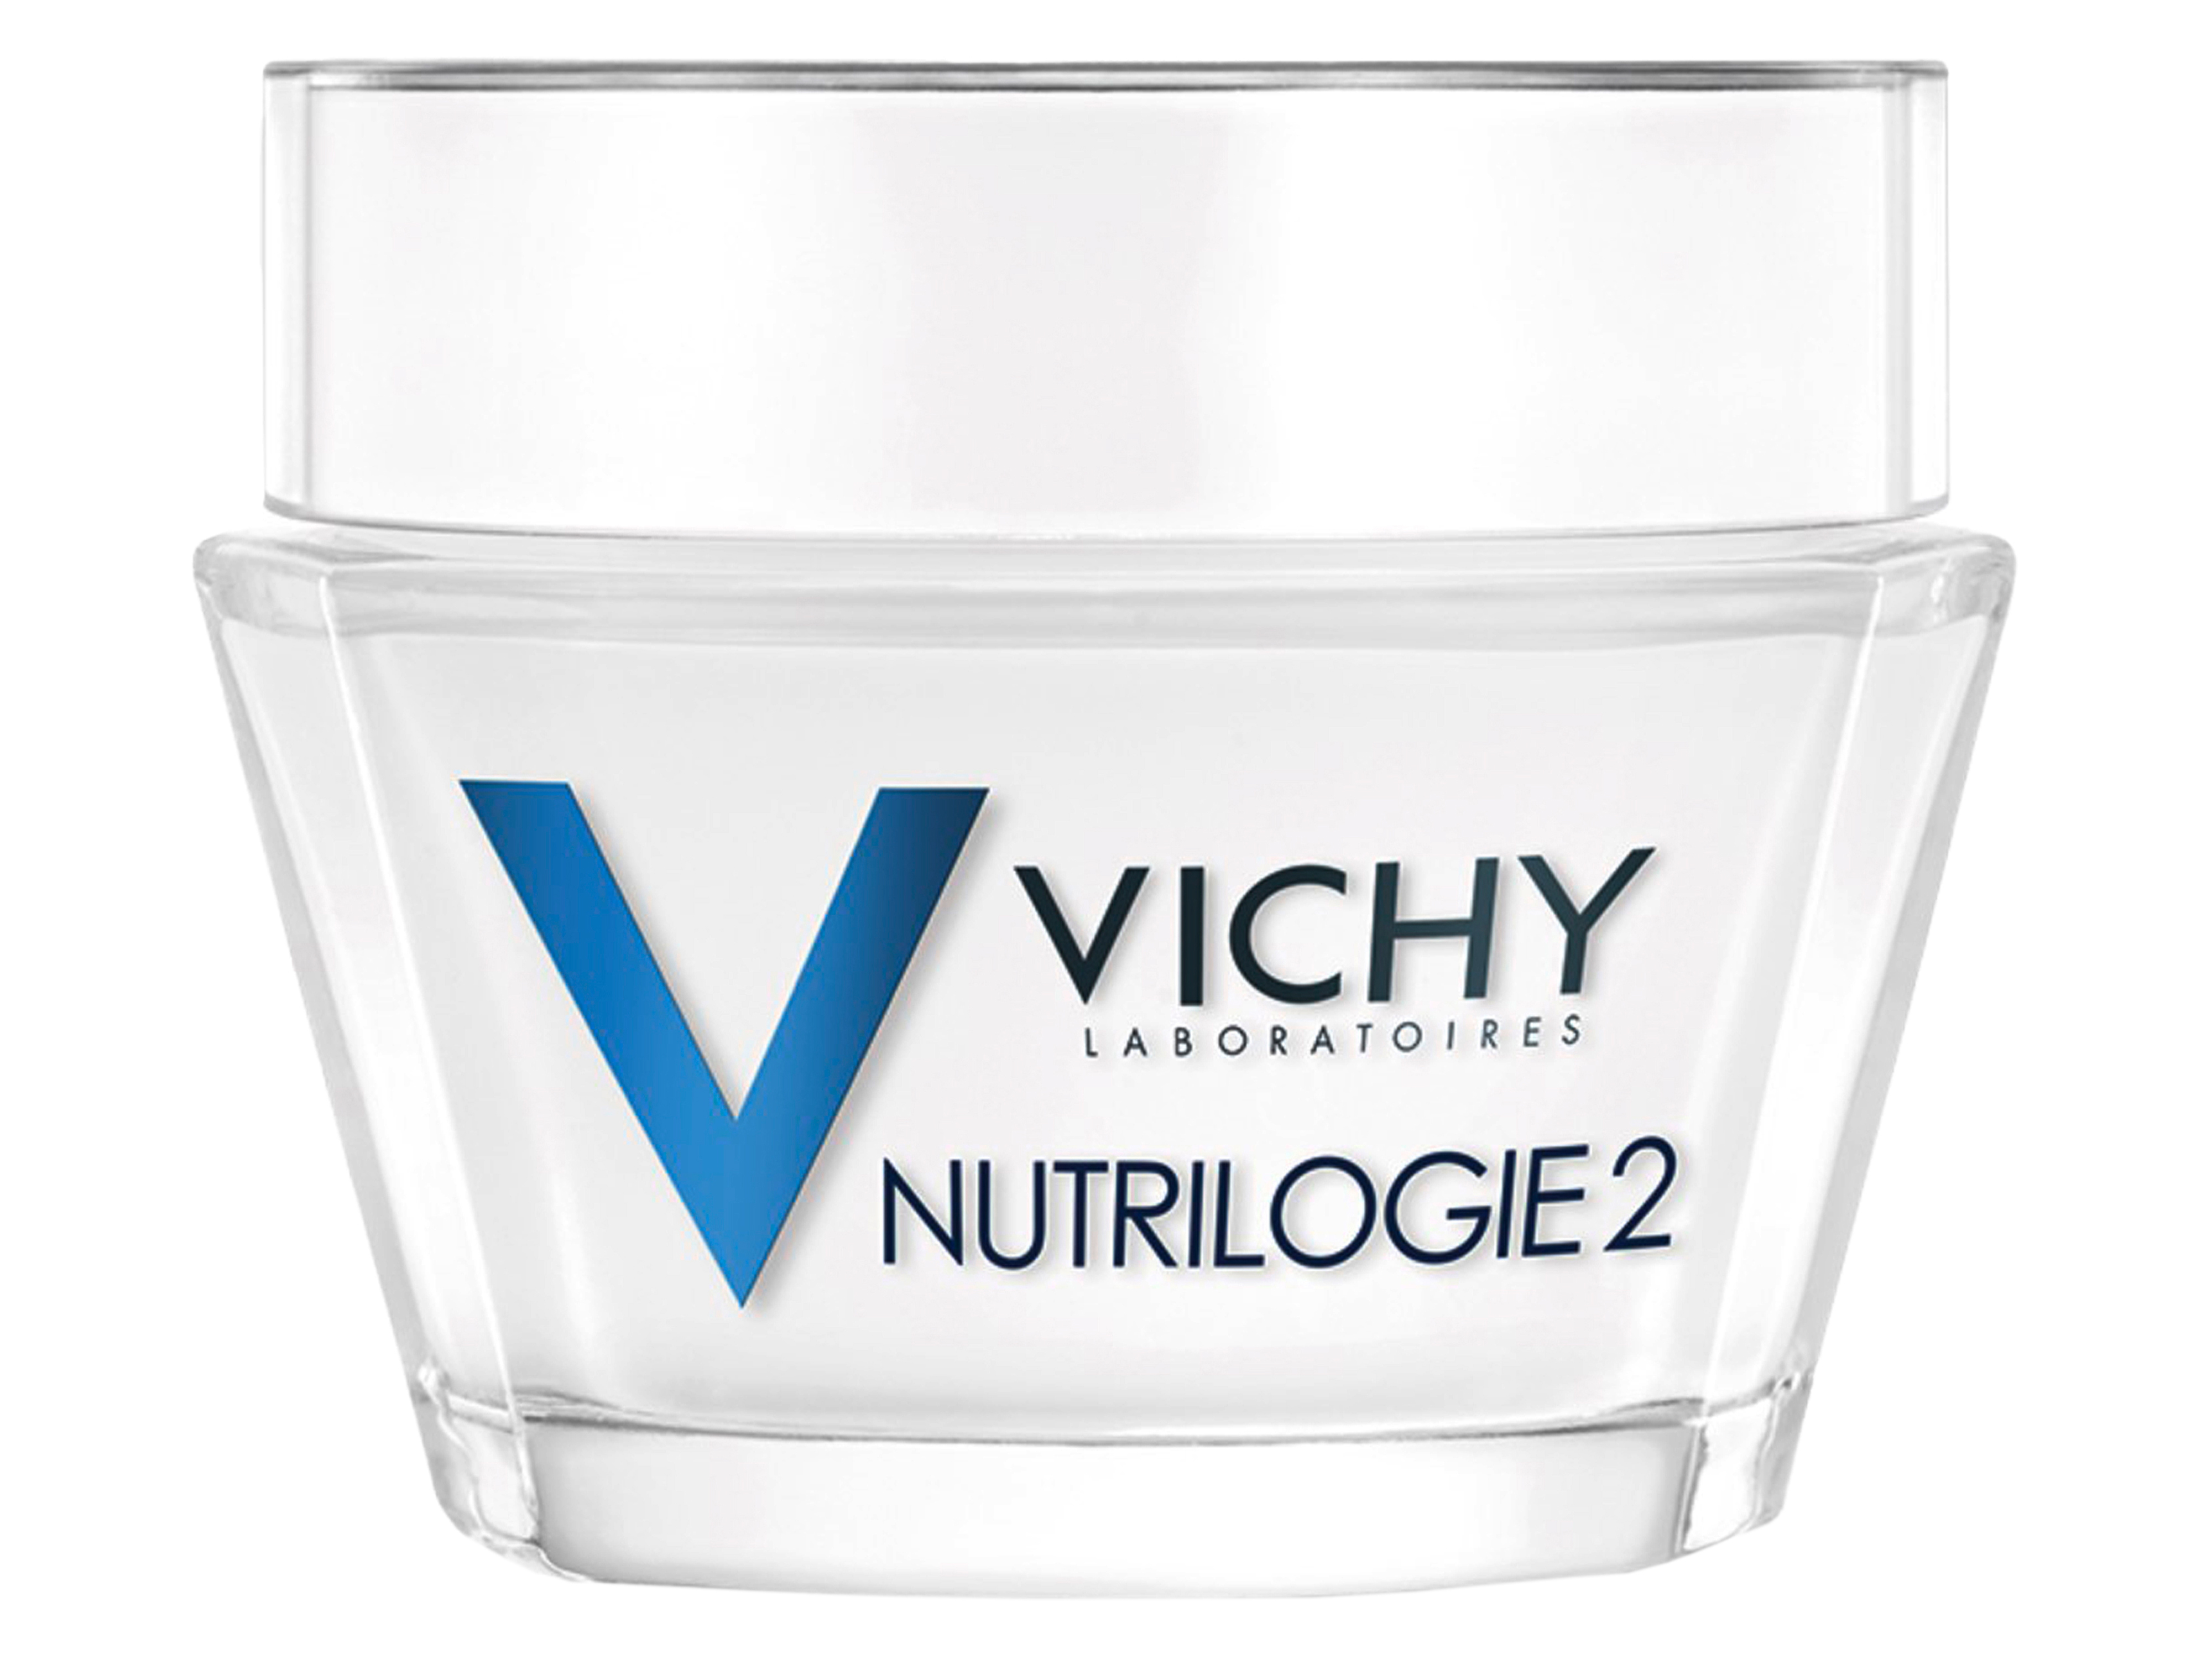 Vichy Nutrilogie 2, 50 ml